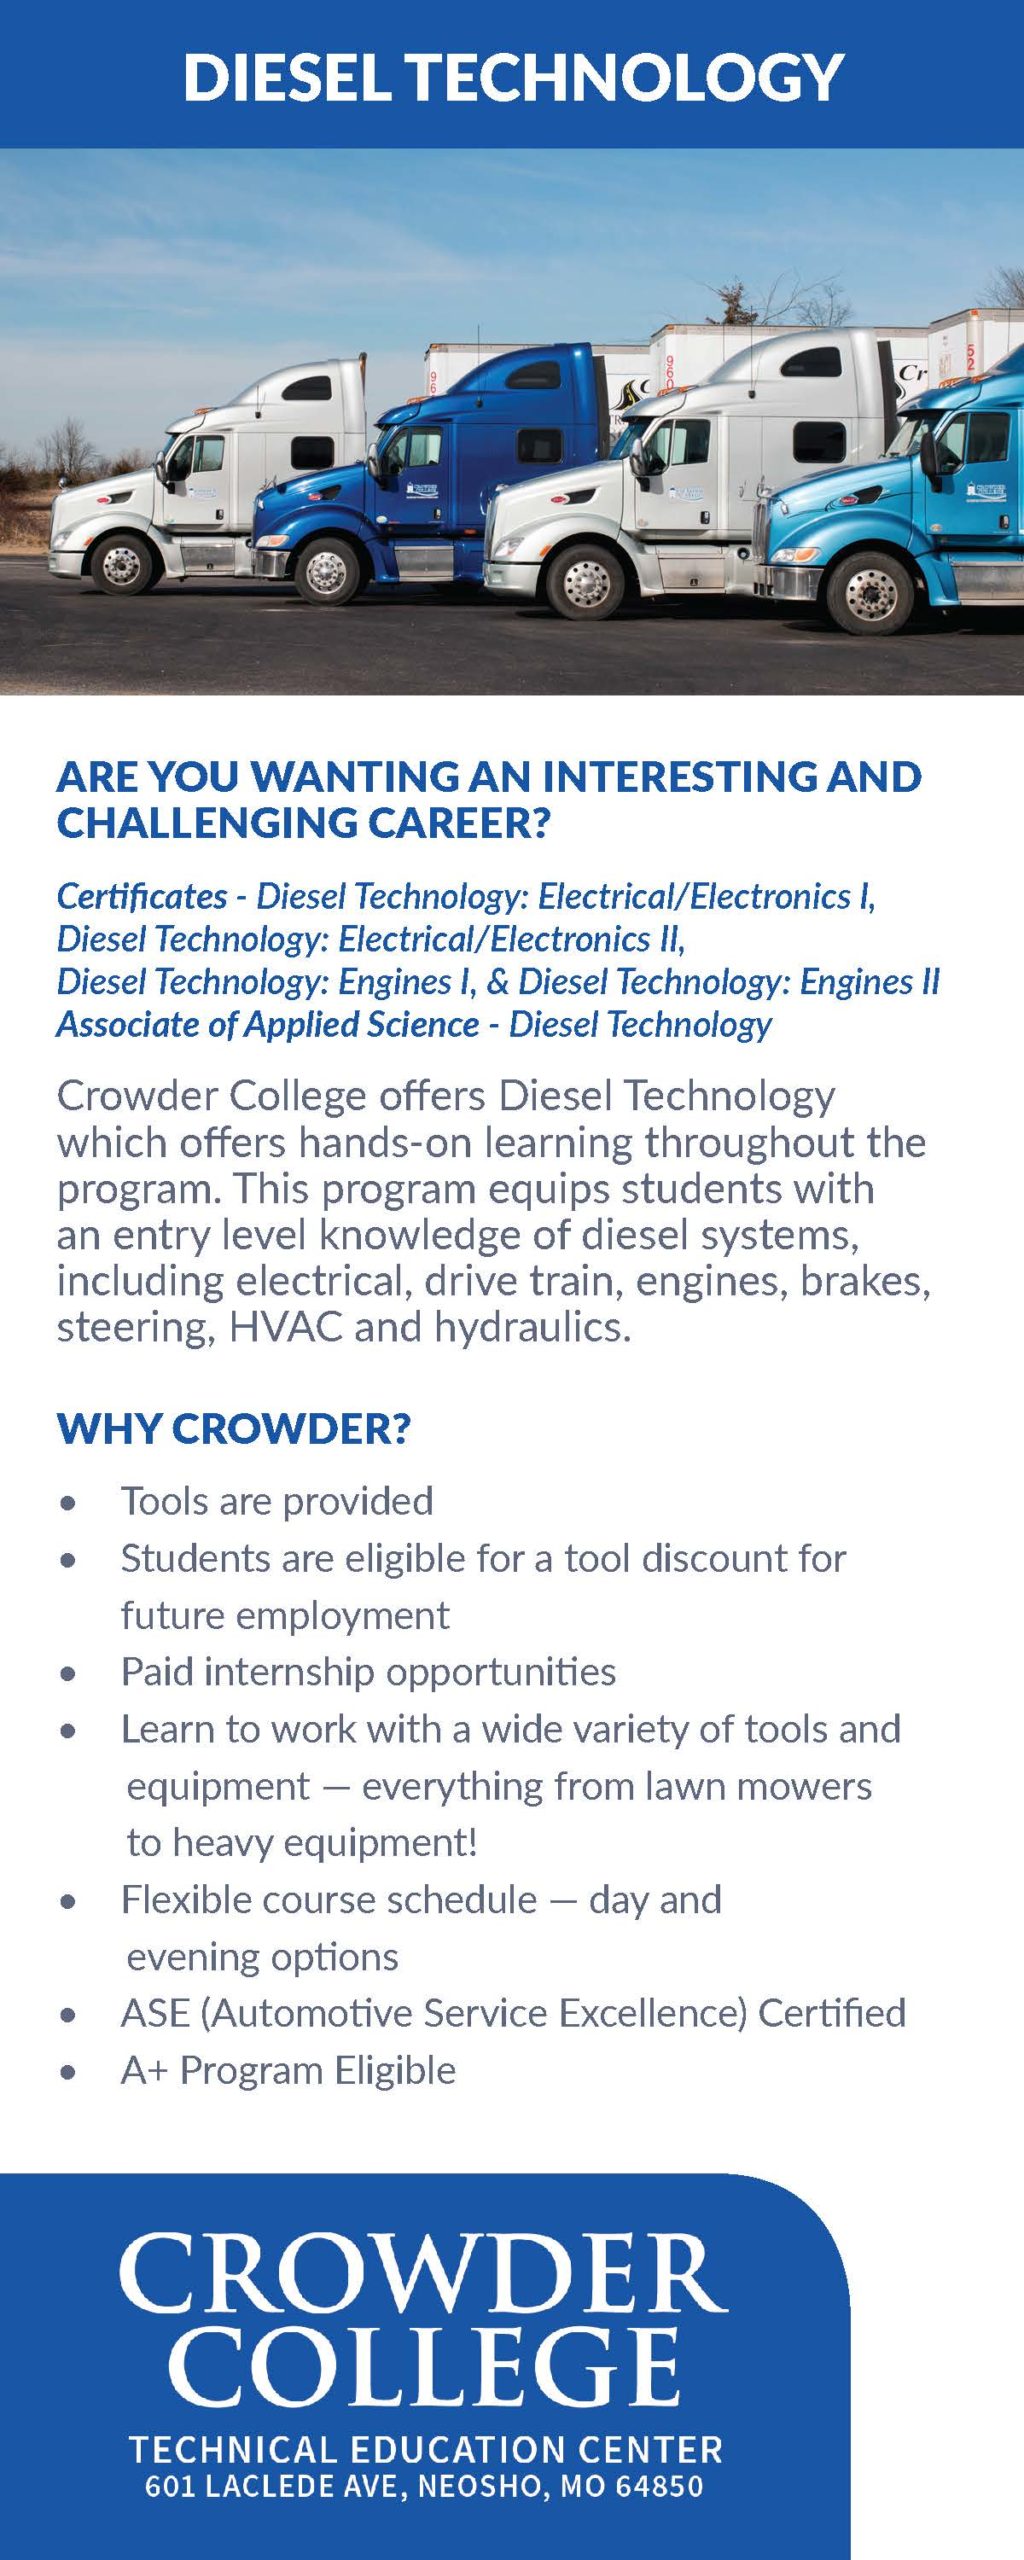 Crowder College Diesel Technology program trucks